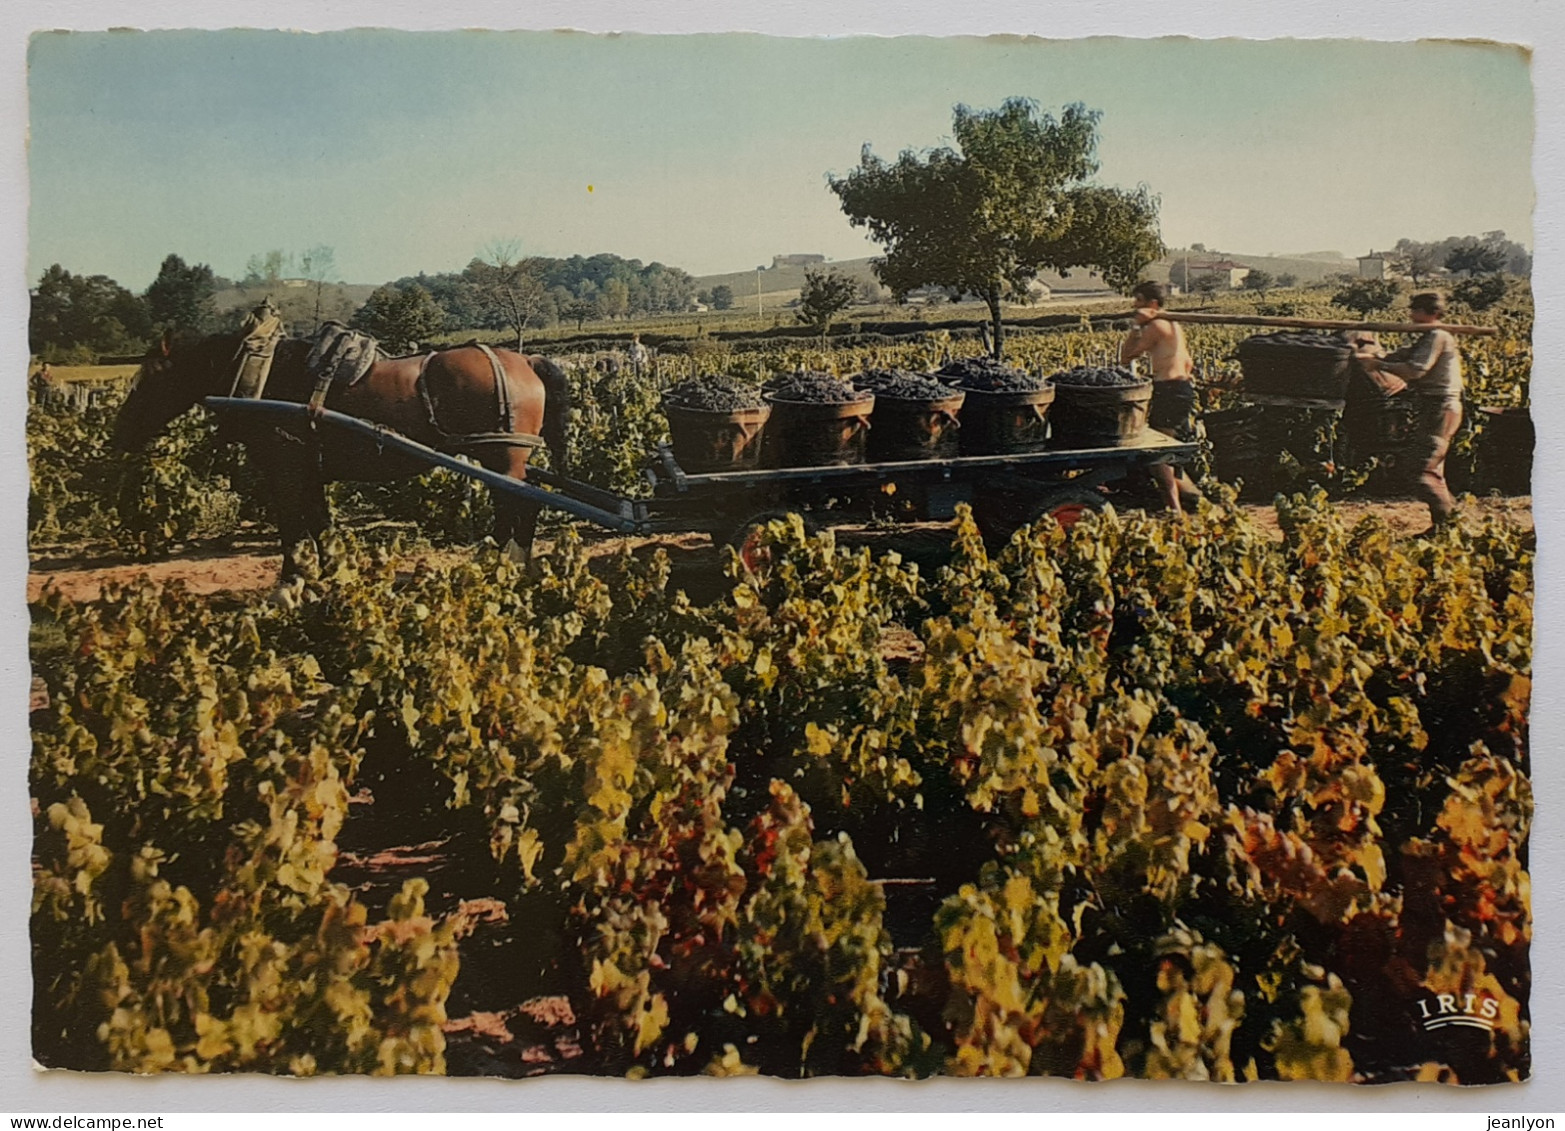 BEAUJOLAIS / VENDANGES - Vigne / Vin - Porteur De Bennes - Attelage à Cheval - Farmers